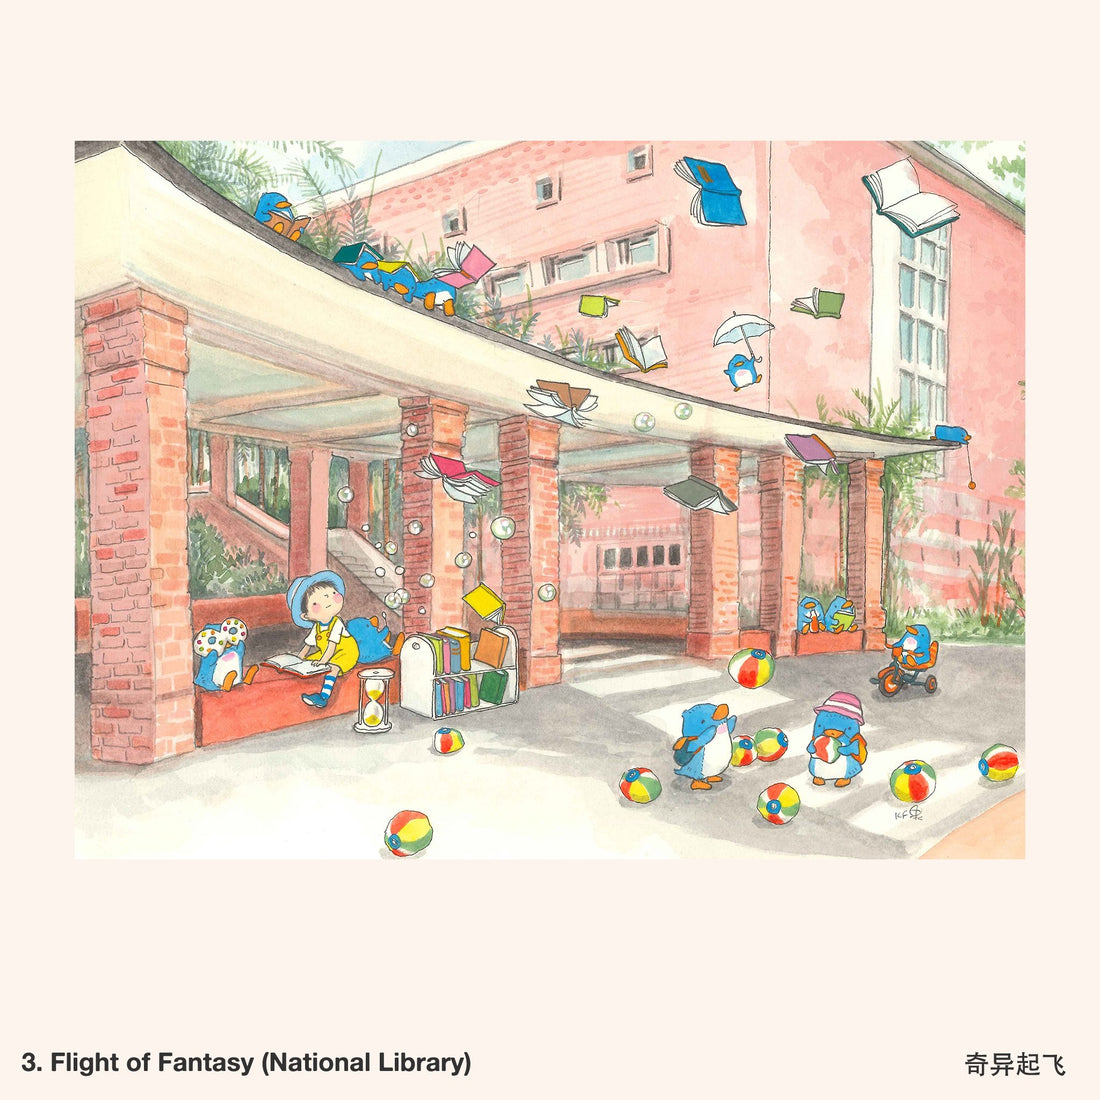 3. Flight of Fantasy (National Library) Artwork